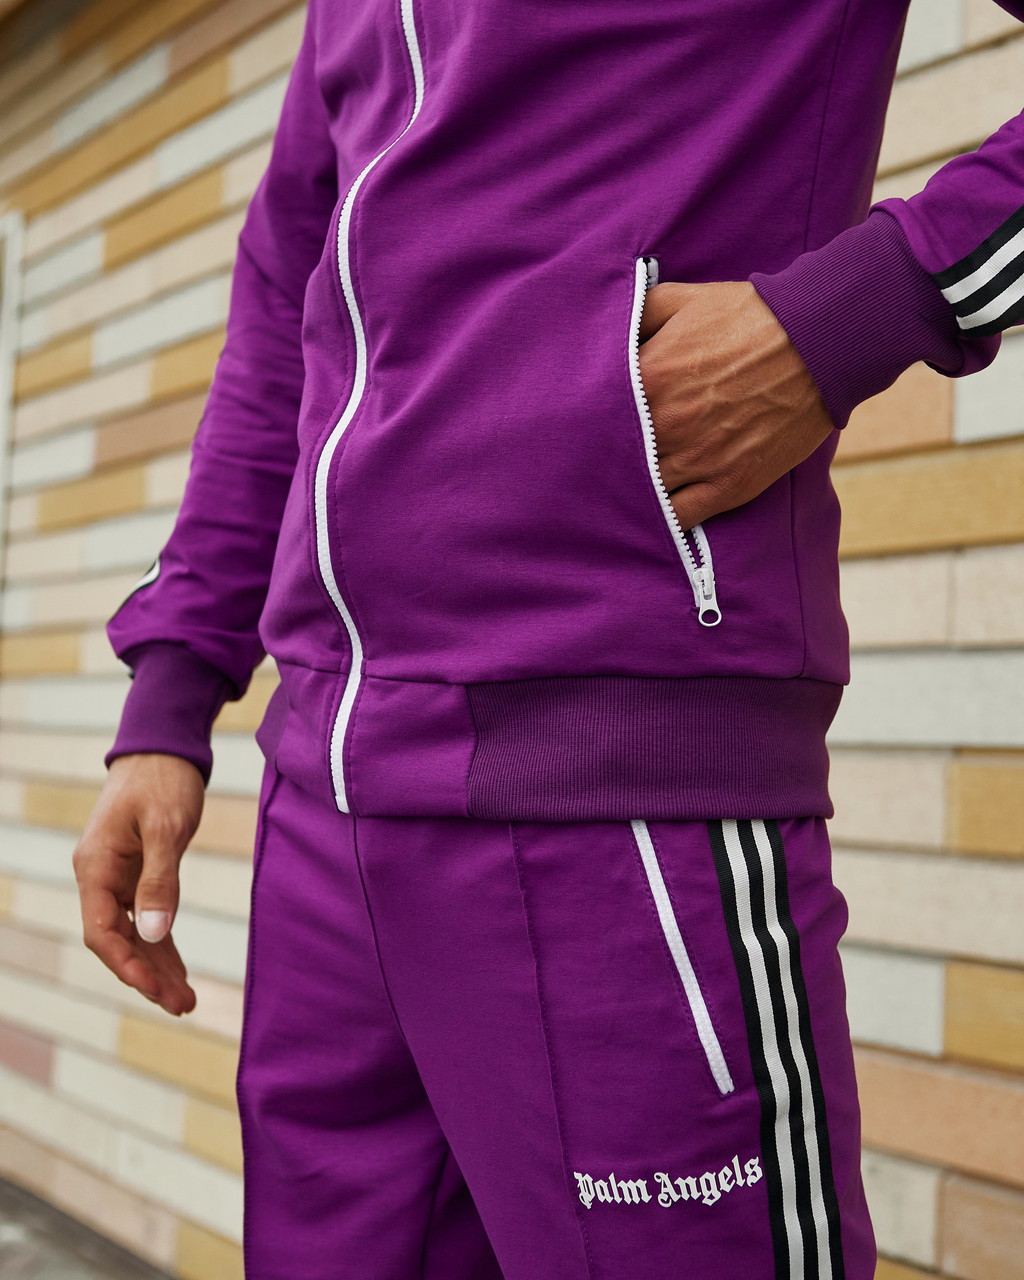 Олимпийка мужская в стиле Palm Angels фиолетовая Пушка Огонь - Фото 1